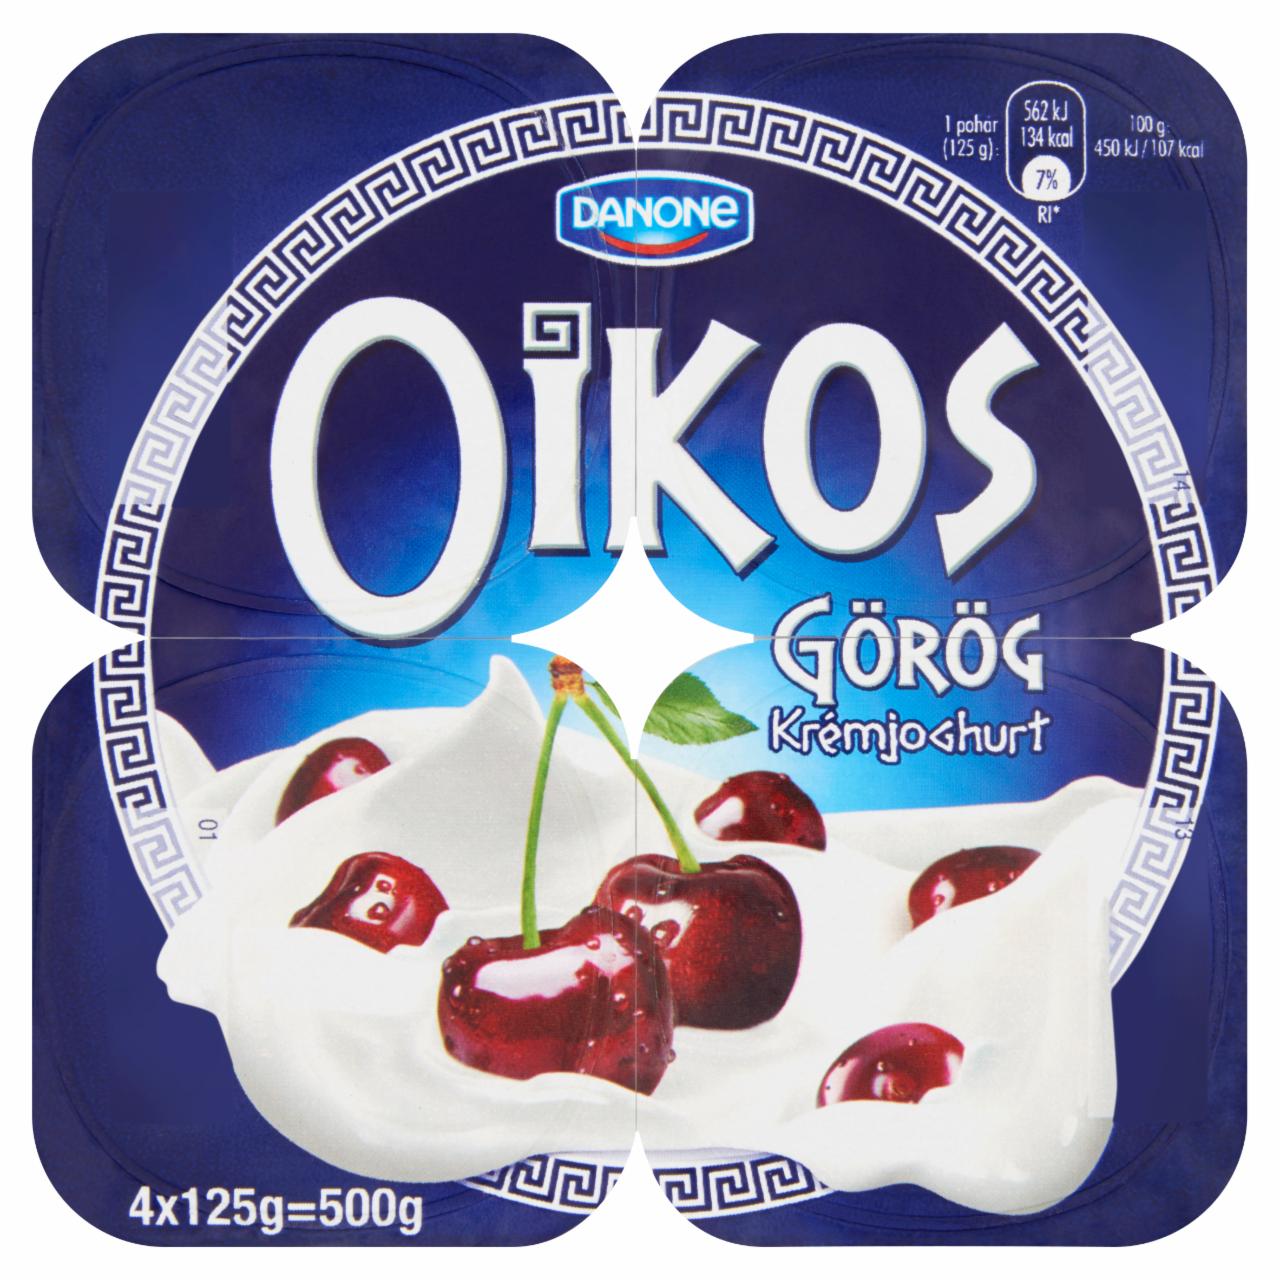 Képek - Danone Oikos Görög meggyes élőflórás krémjoghurt 4 x 125 g